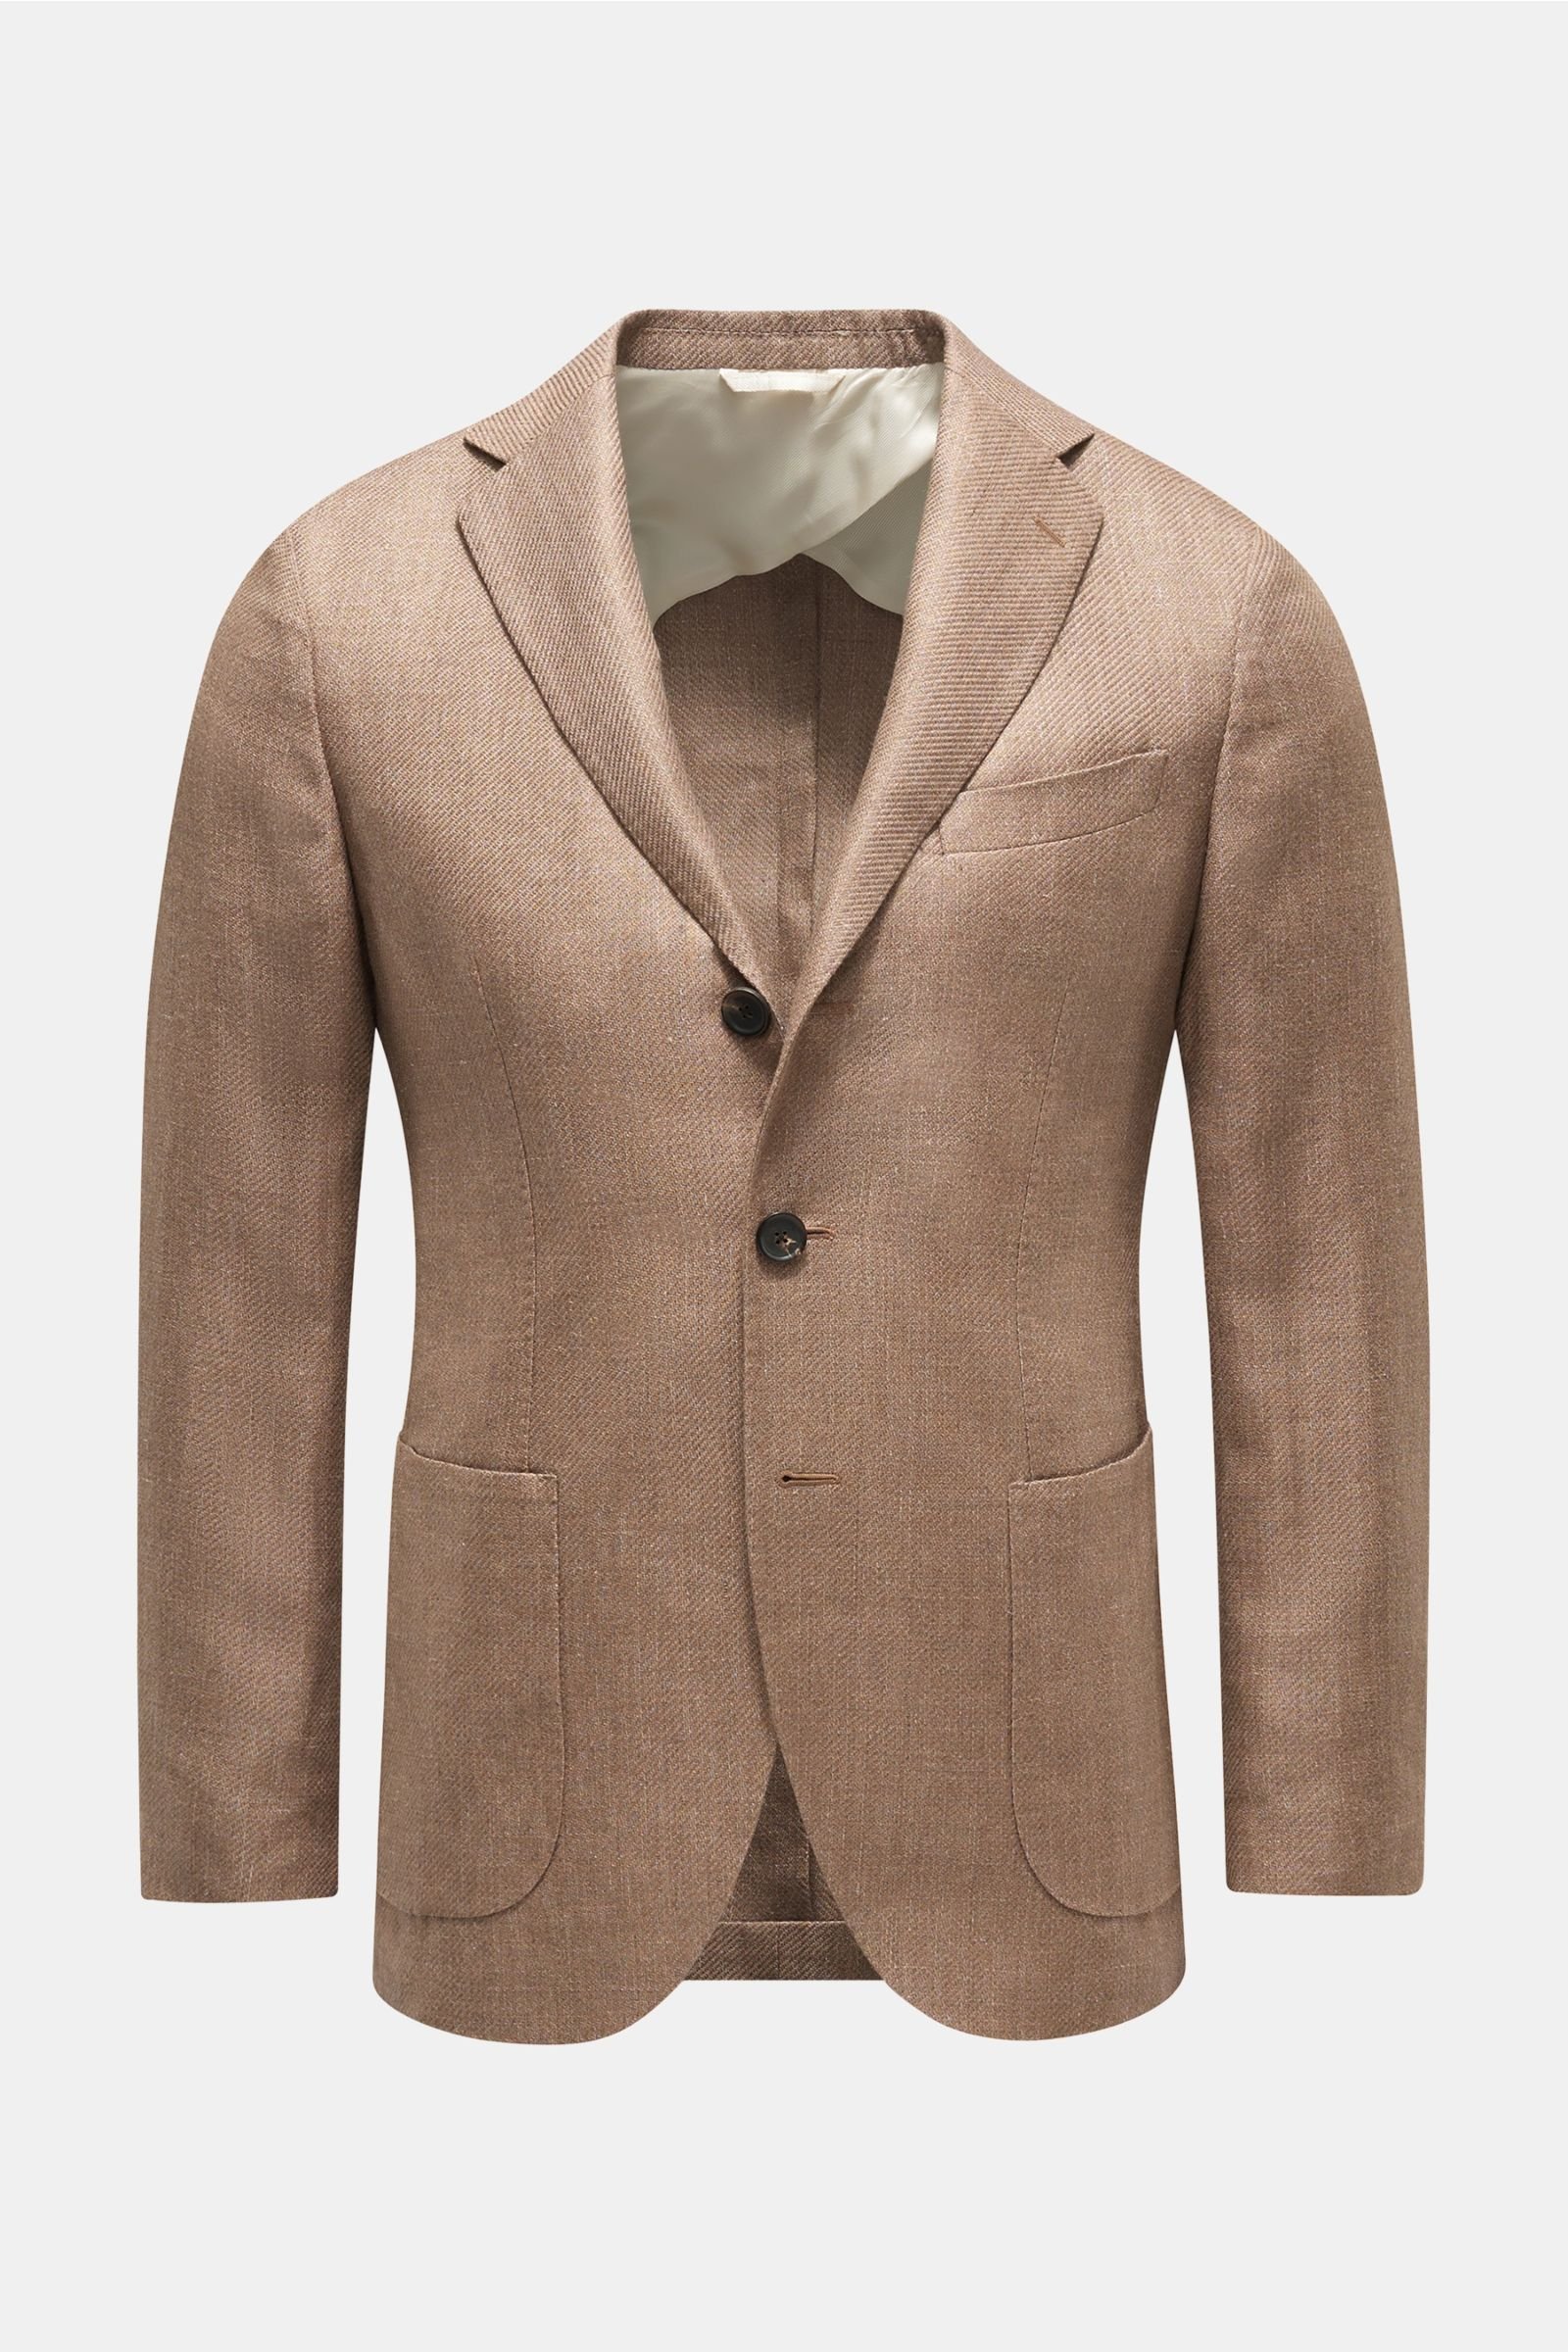 Smart-casual jacket 'Aanzio' light brown